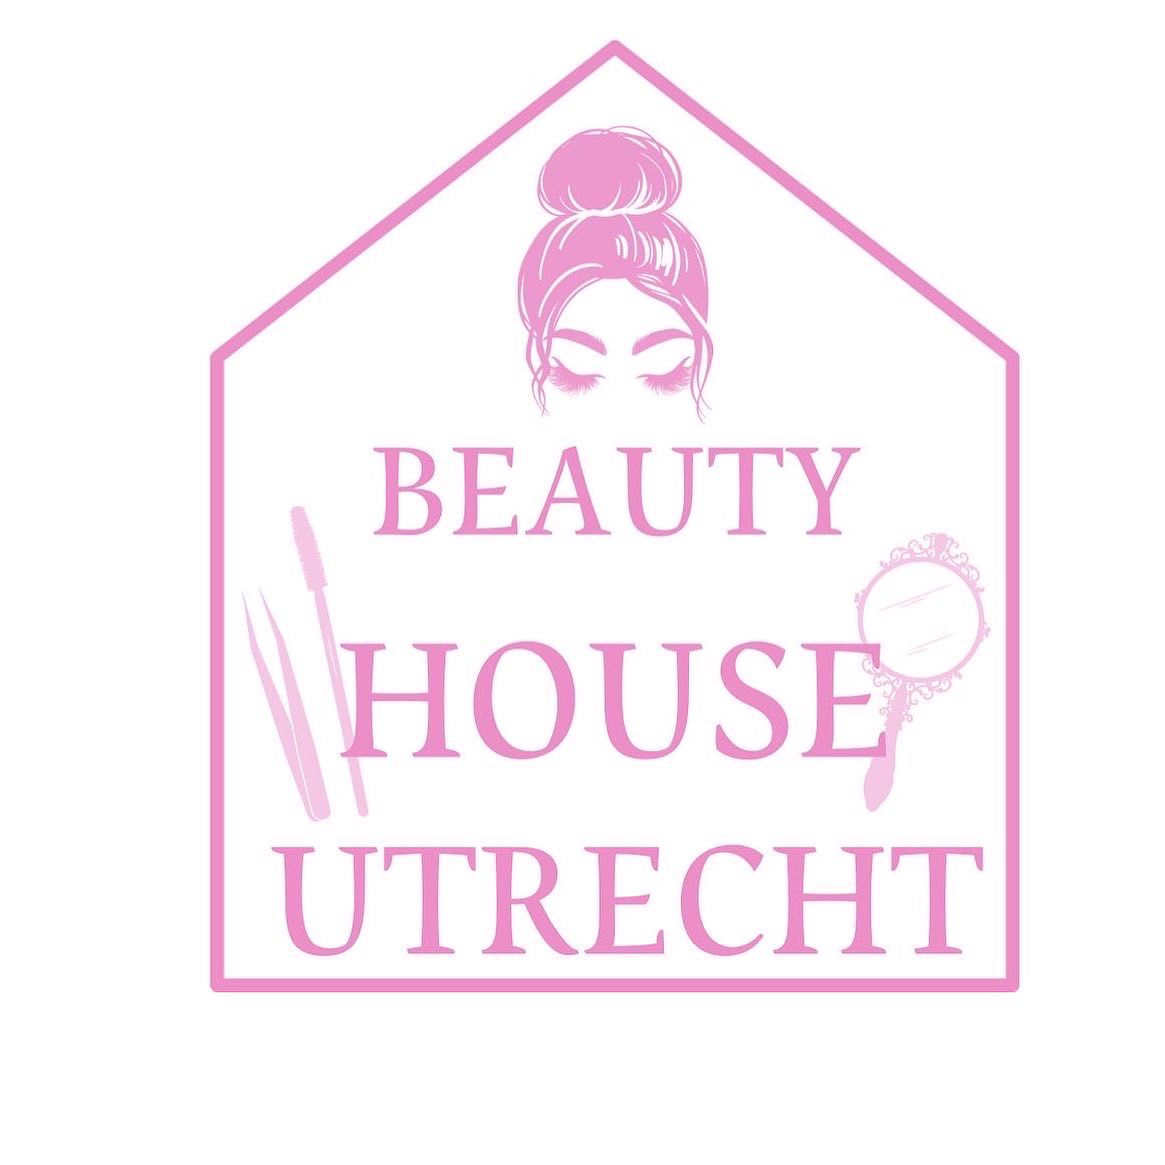 BEAUTY HOUSE UTRECHT